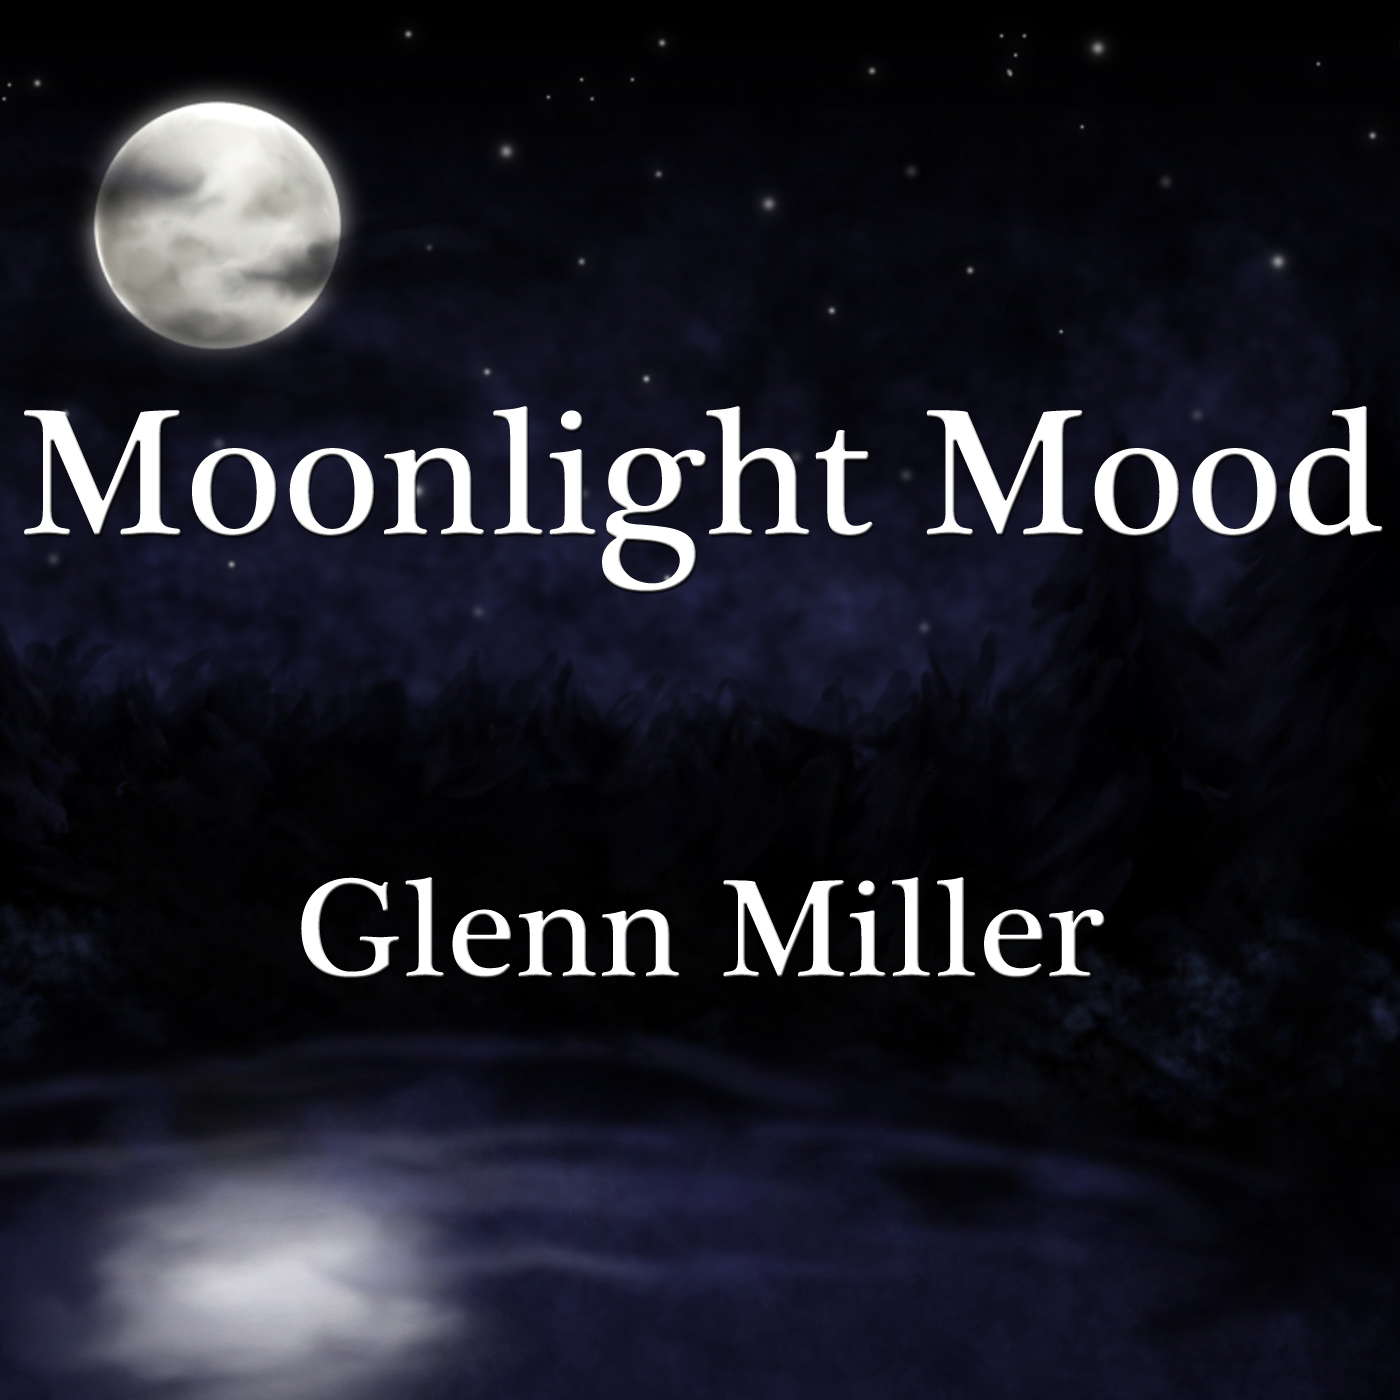 Moonlight Mood